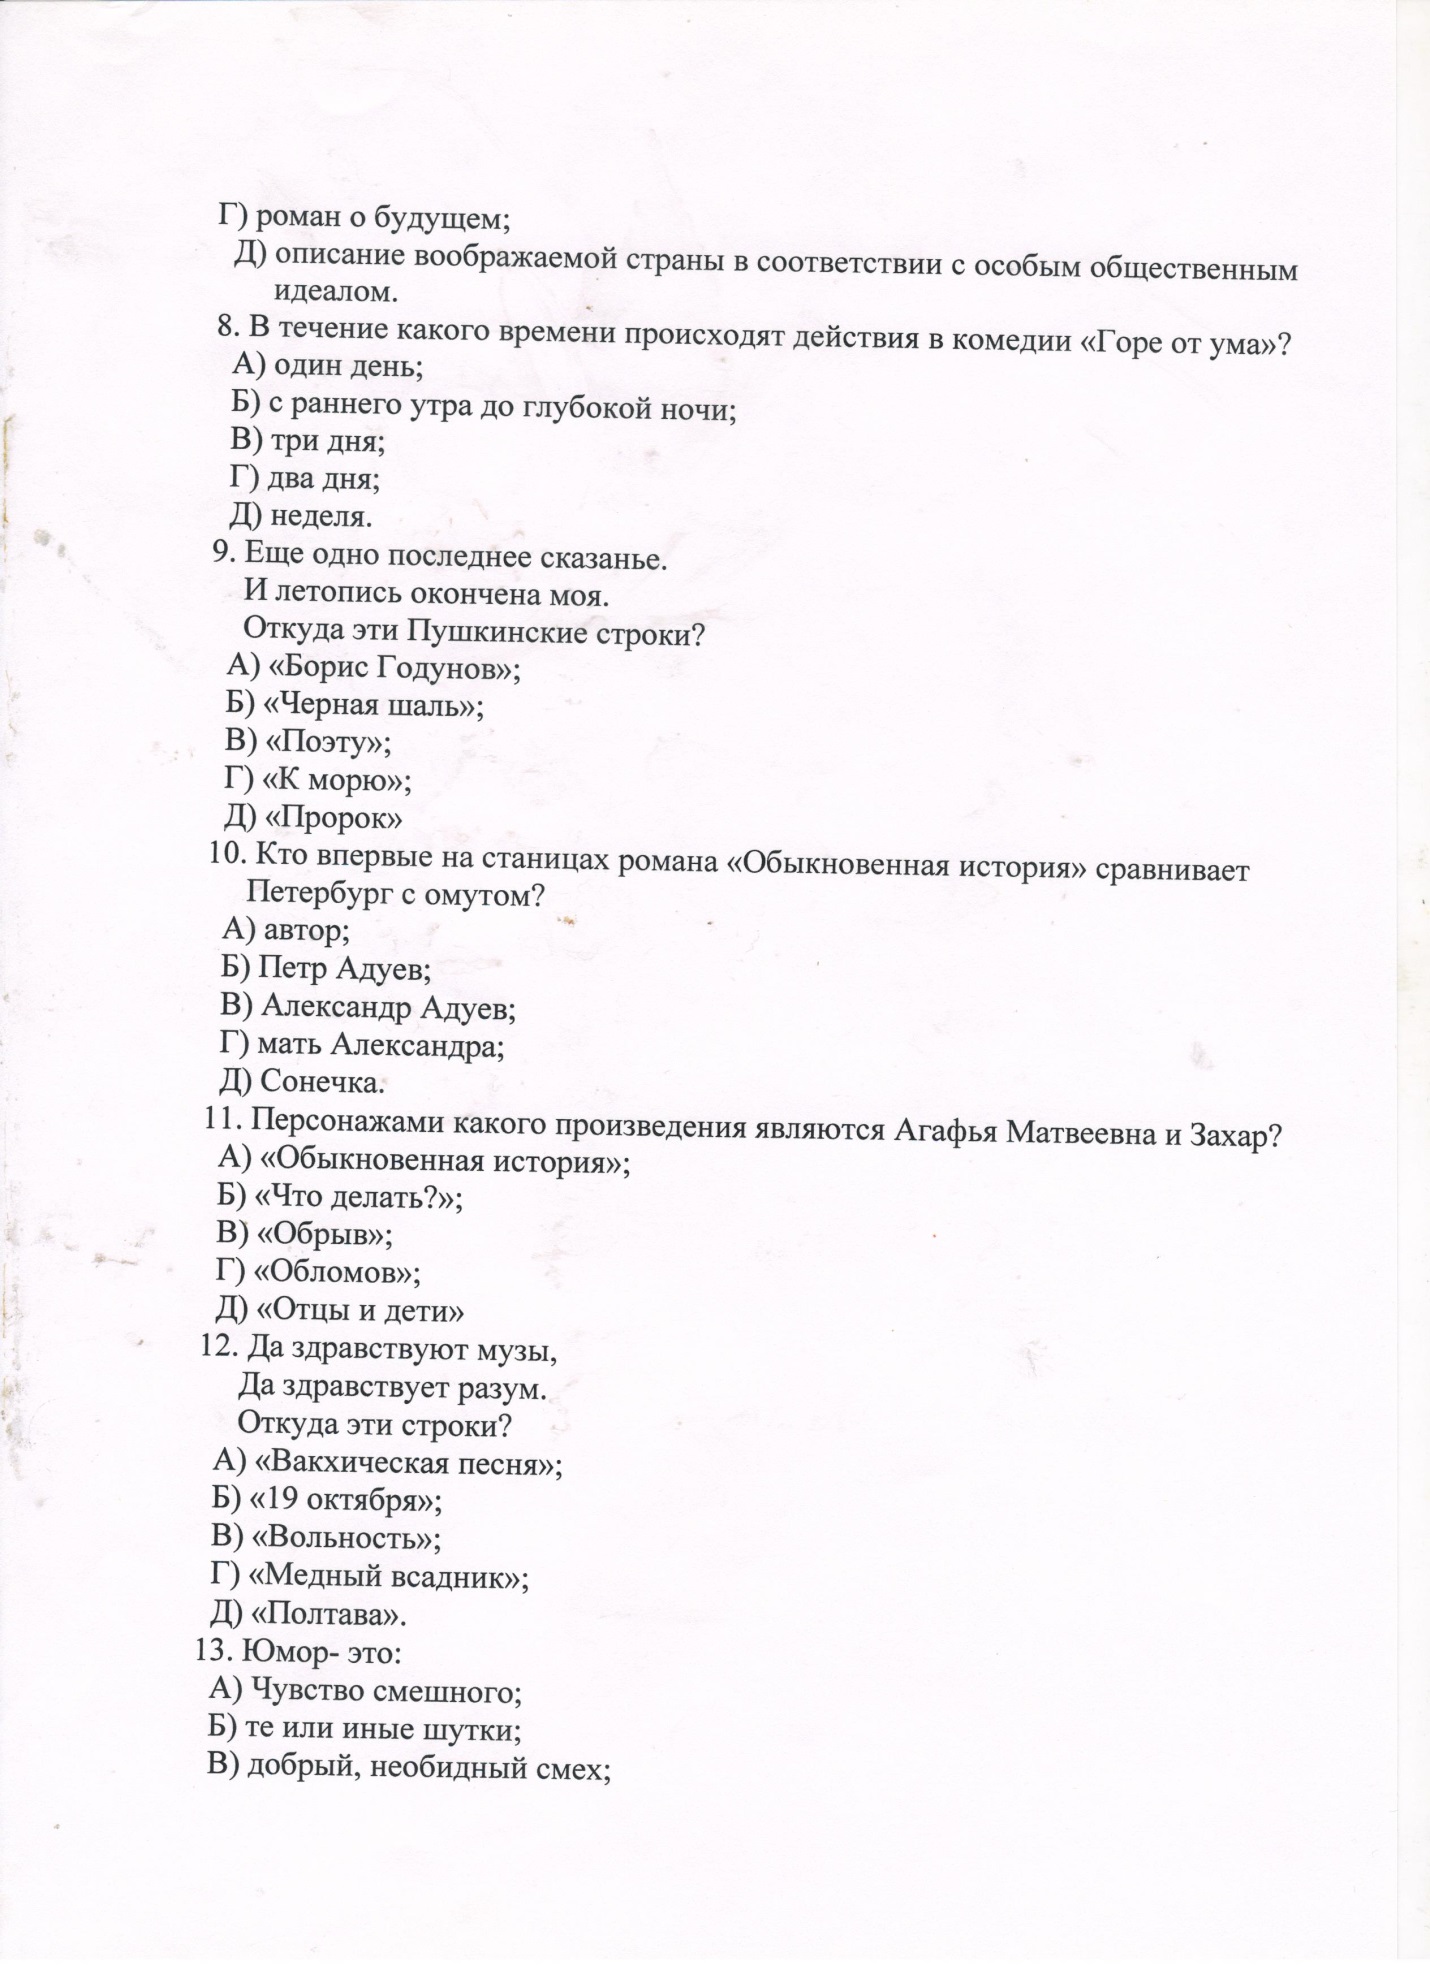 Тесты по русской литературе